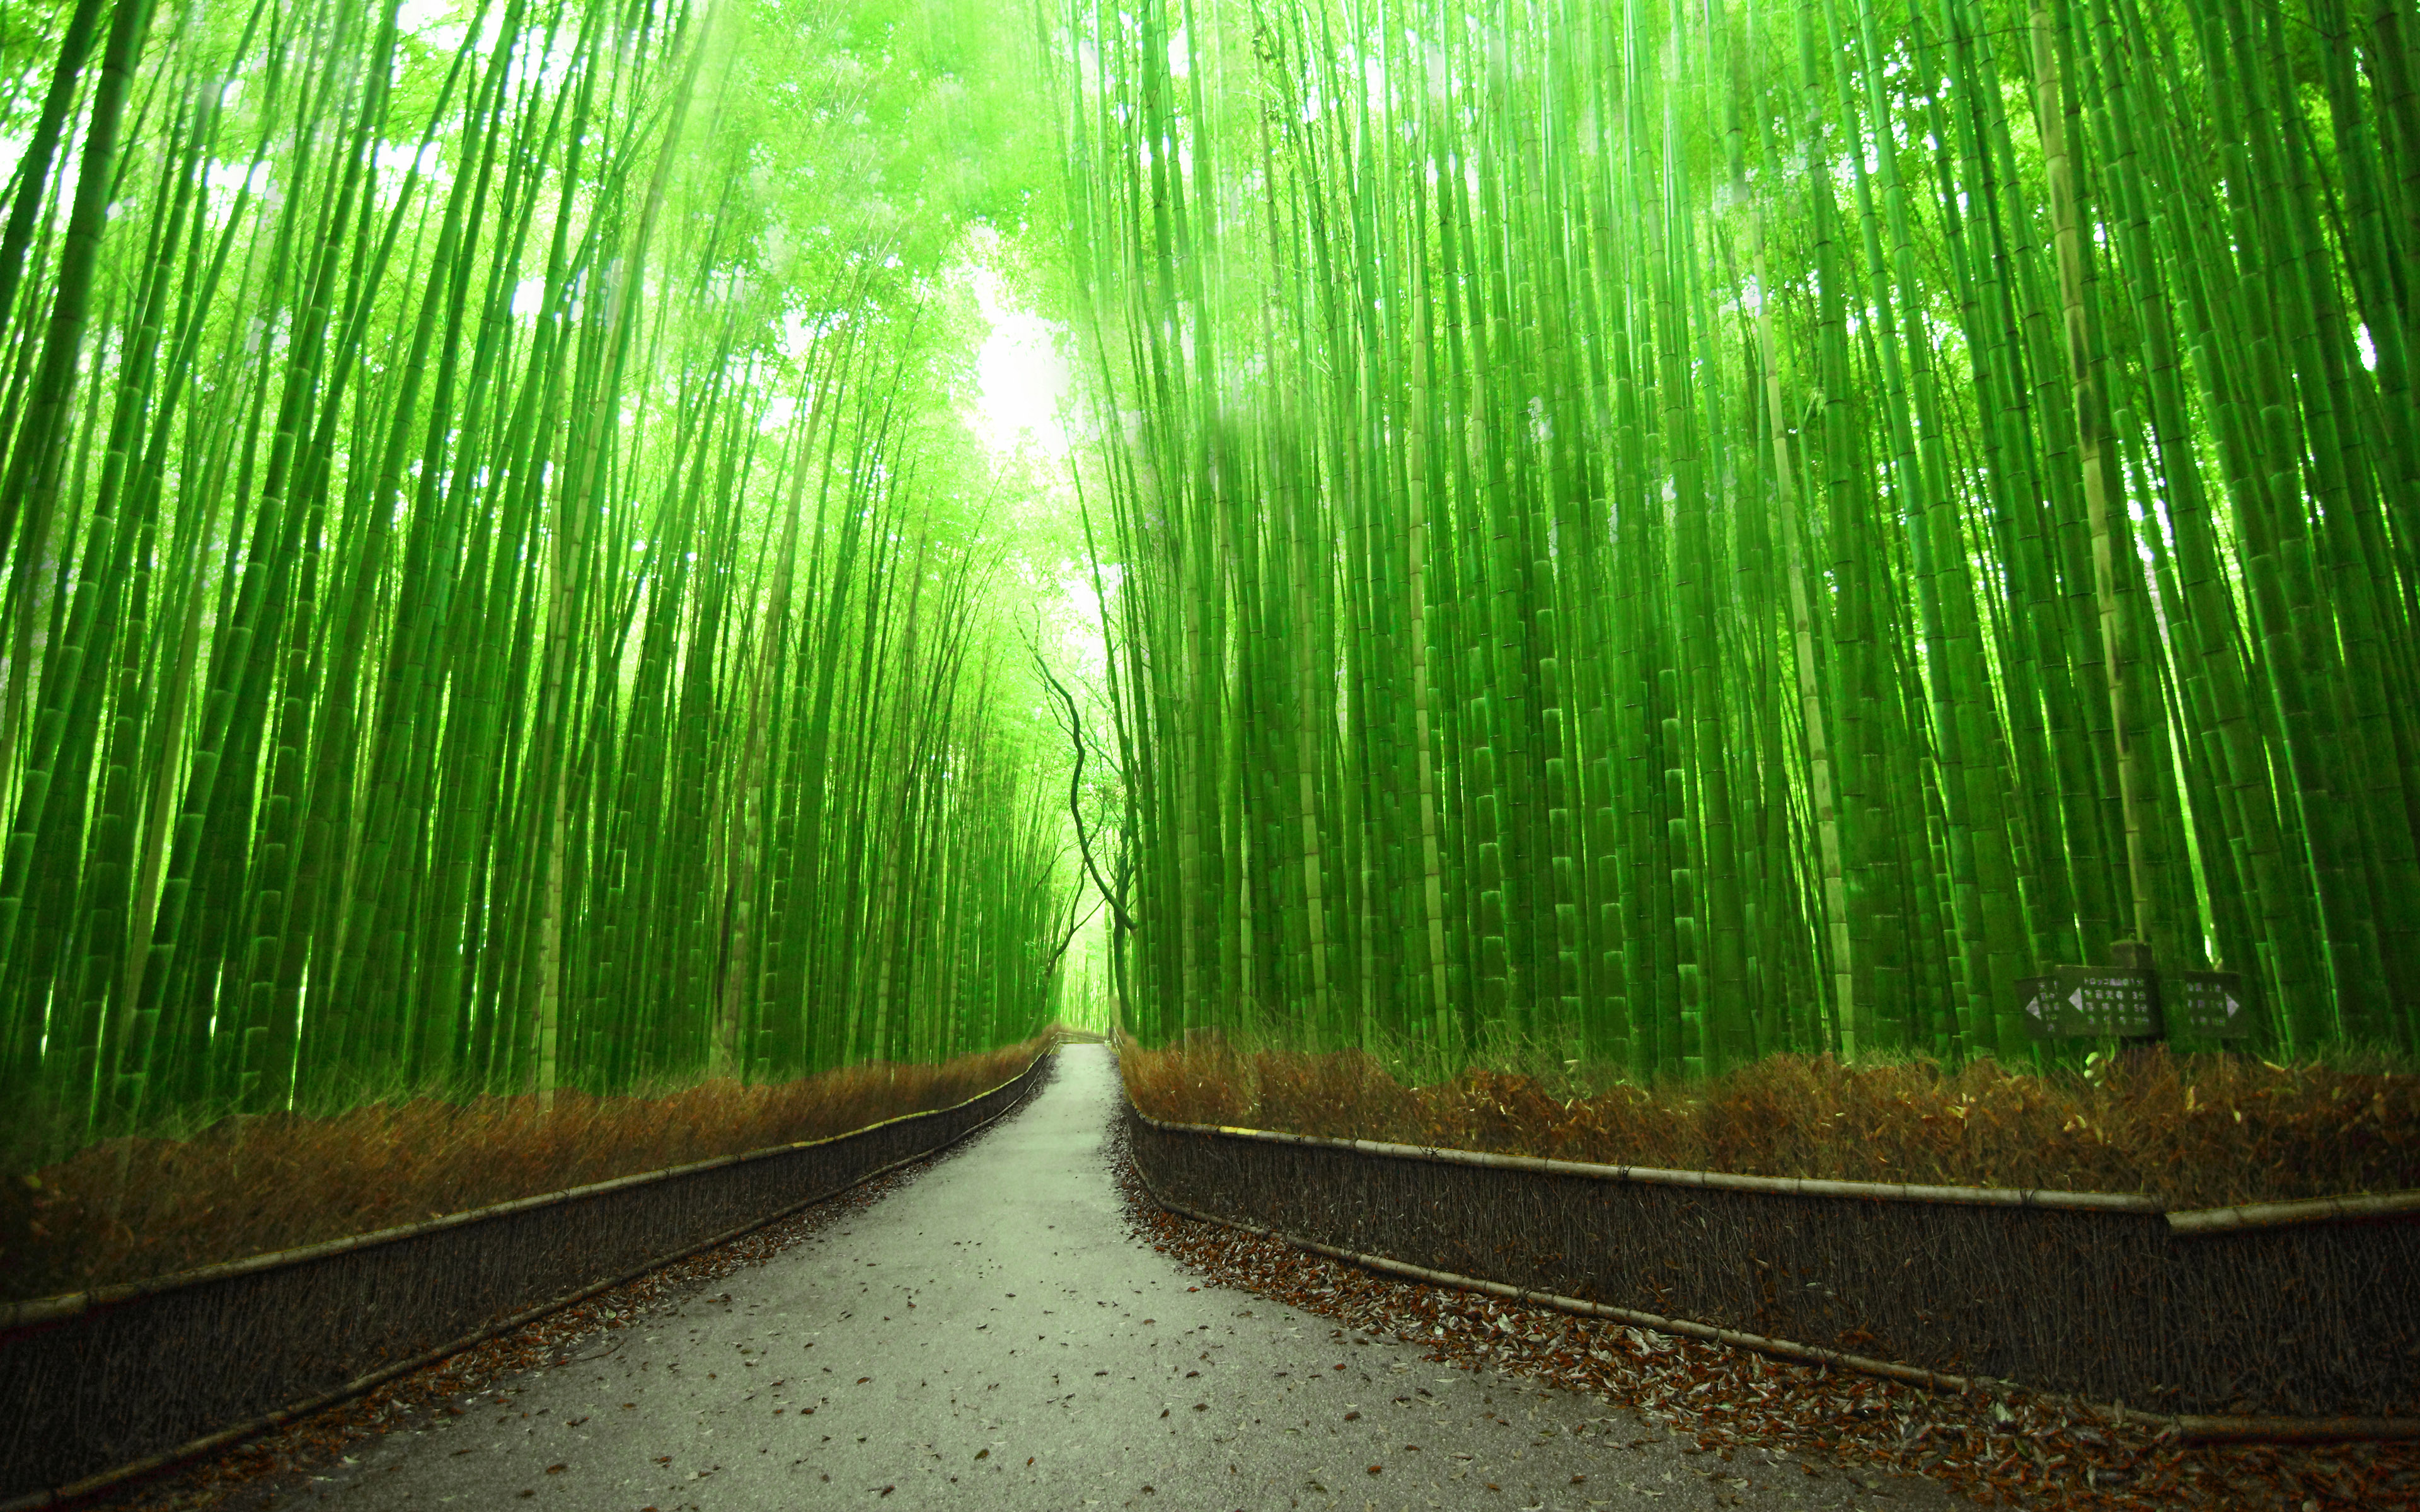 دانلود عکس رایگان جنگل بسیار زیبای بامبو در کشور چین 